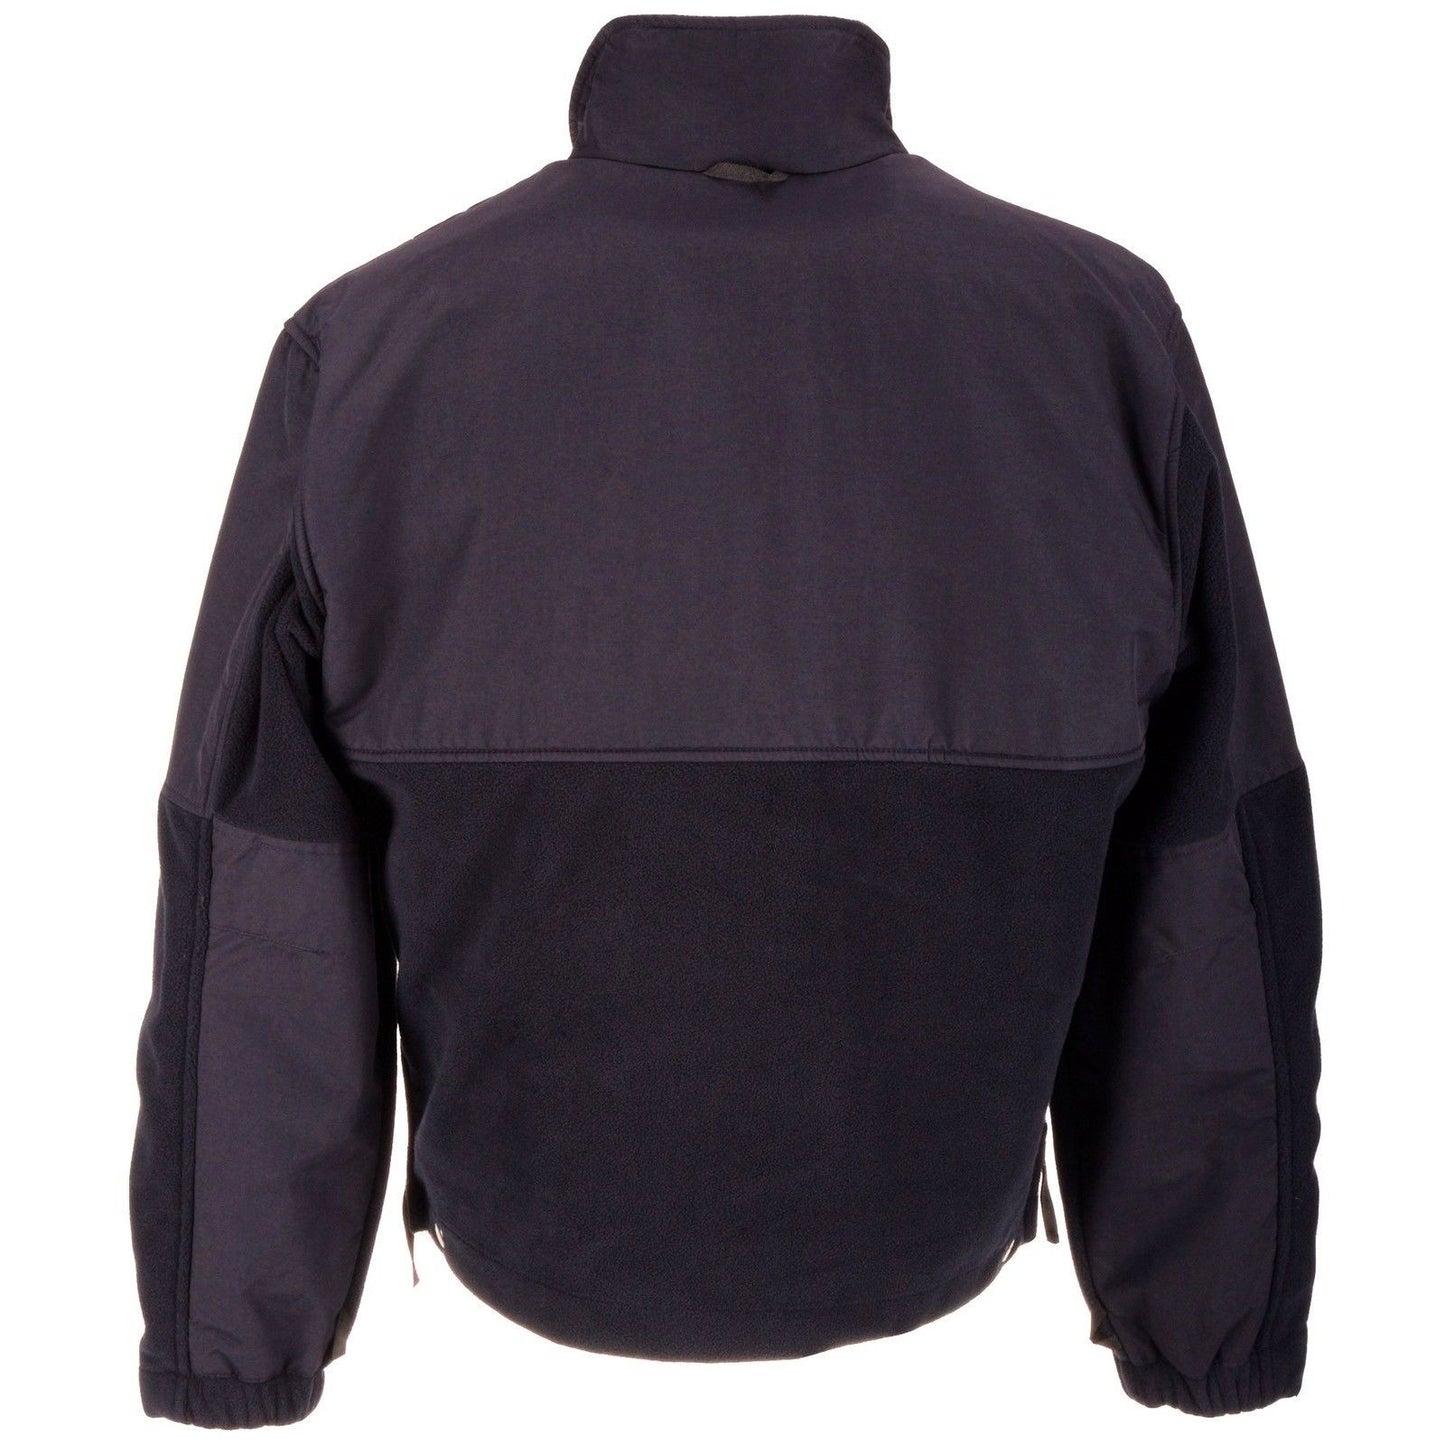 5.11 Tactical All-Weather Fleece Jacket - Mens CCW Wind Resistant Coat